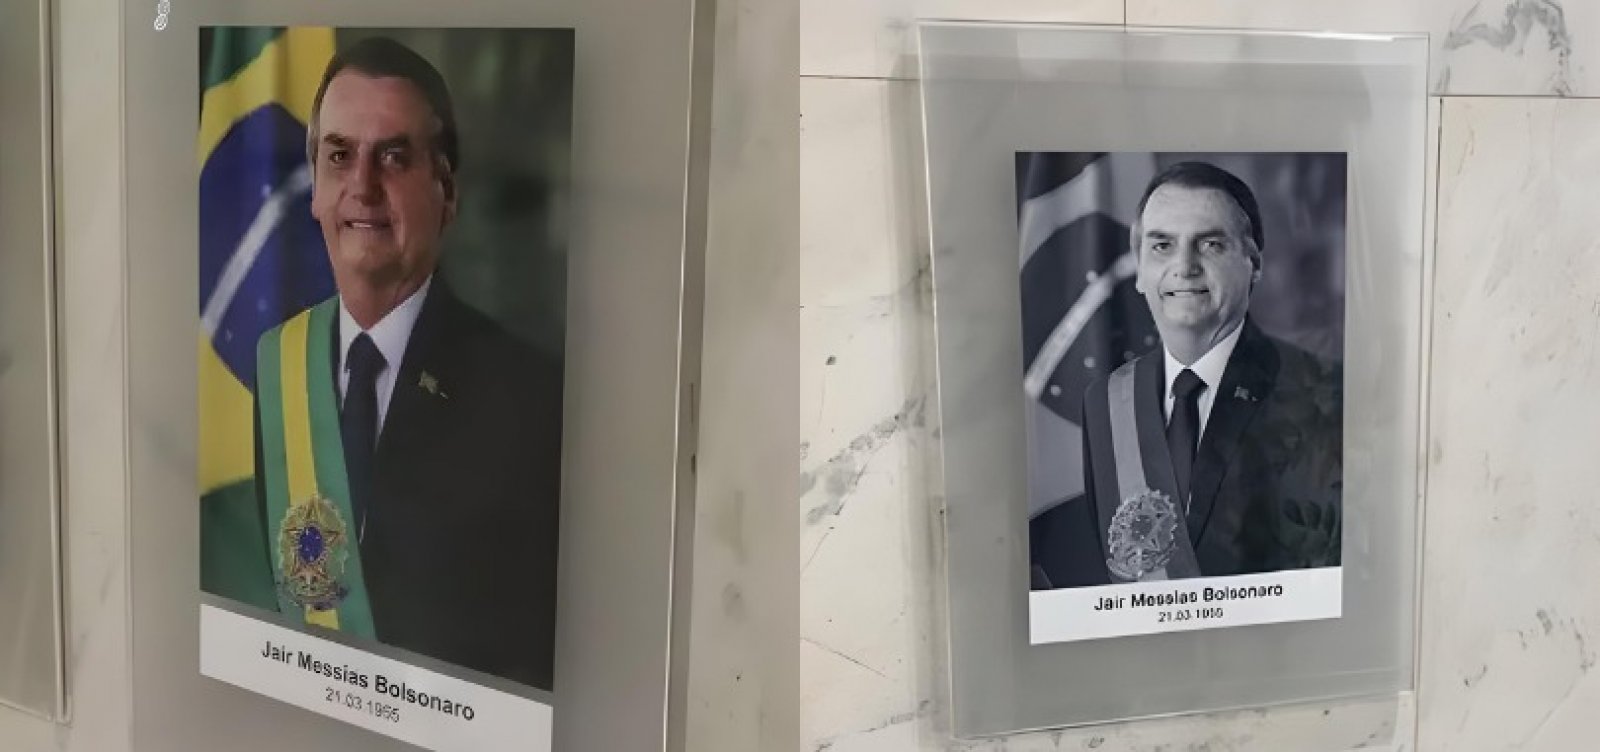 Planalto troca foto de Bolsonaro por imagem em preto e branco na Galeria dos Presidentes 